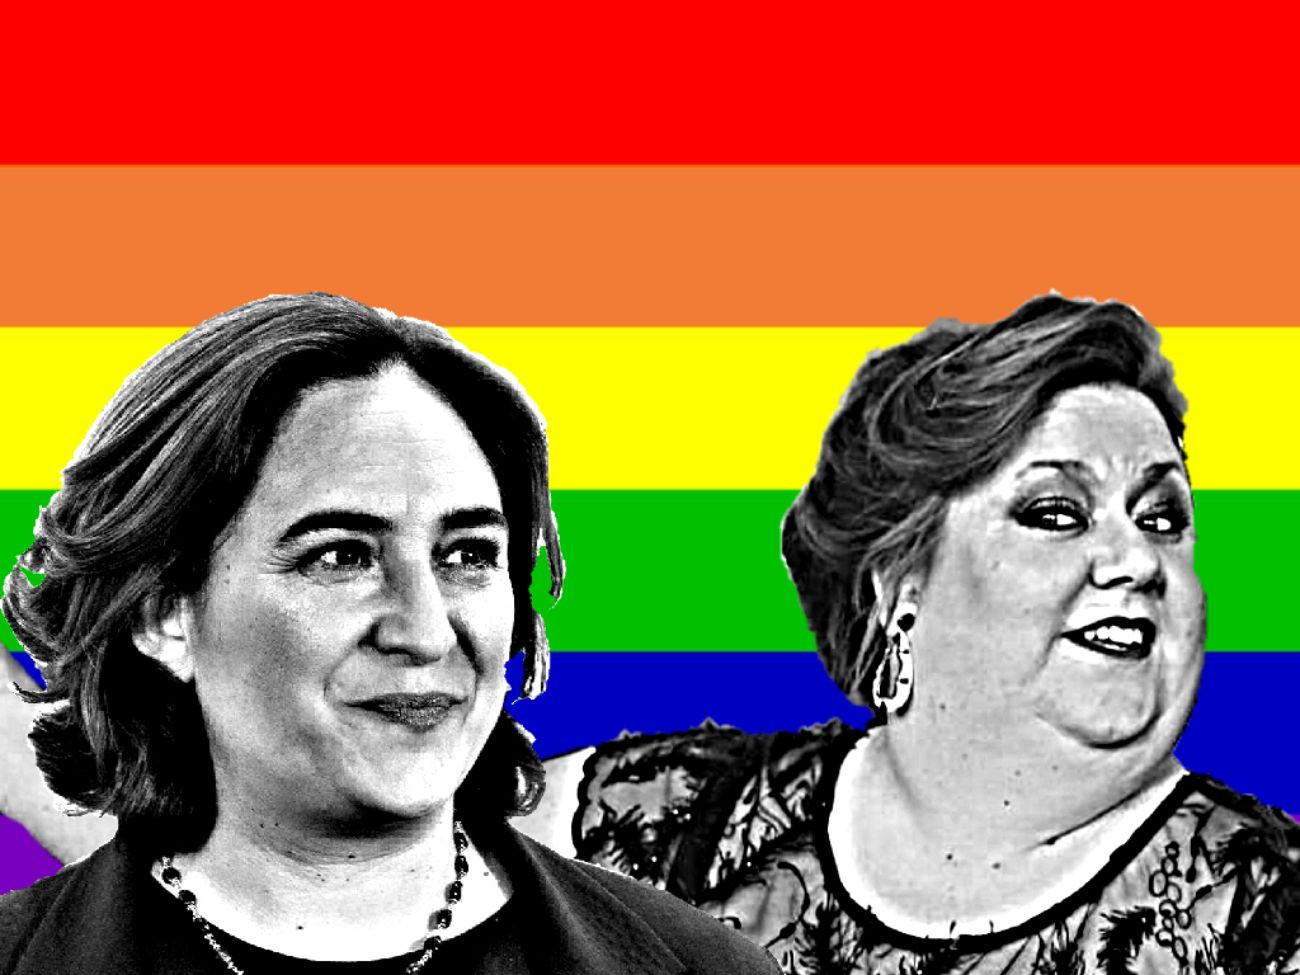 Ada Colau e Itziar Castro sonrientes en el Pride de Barcelona / MA